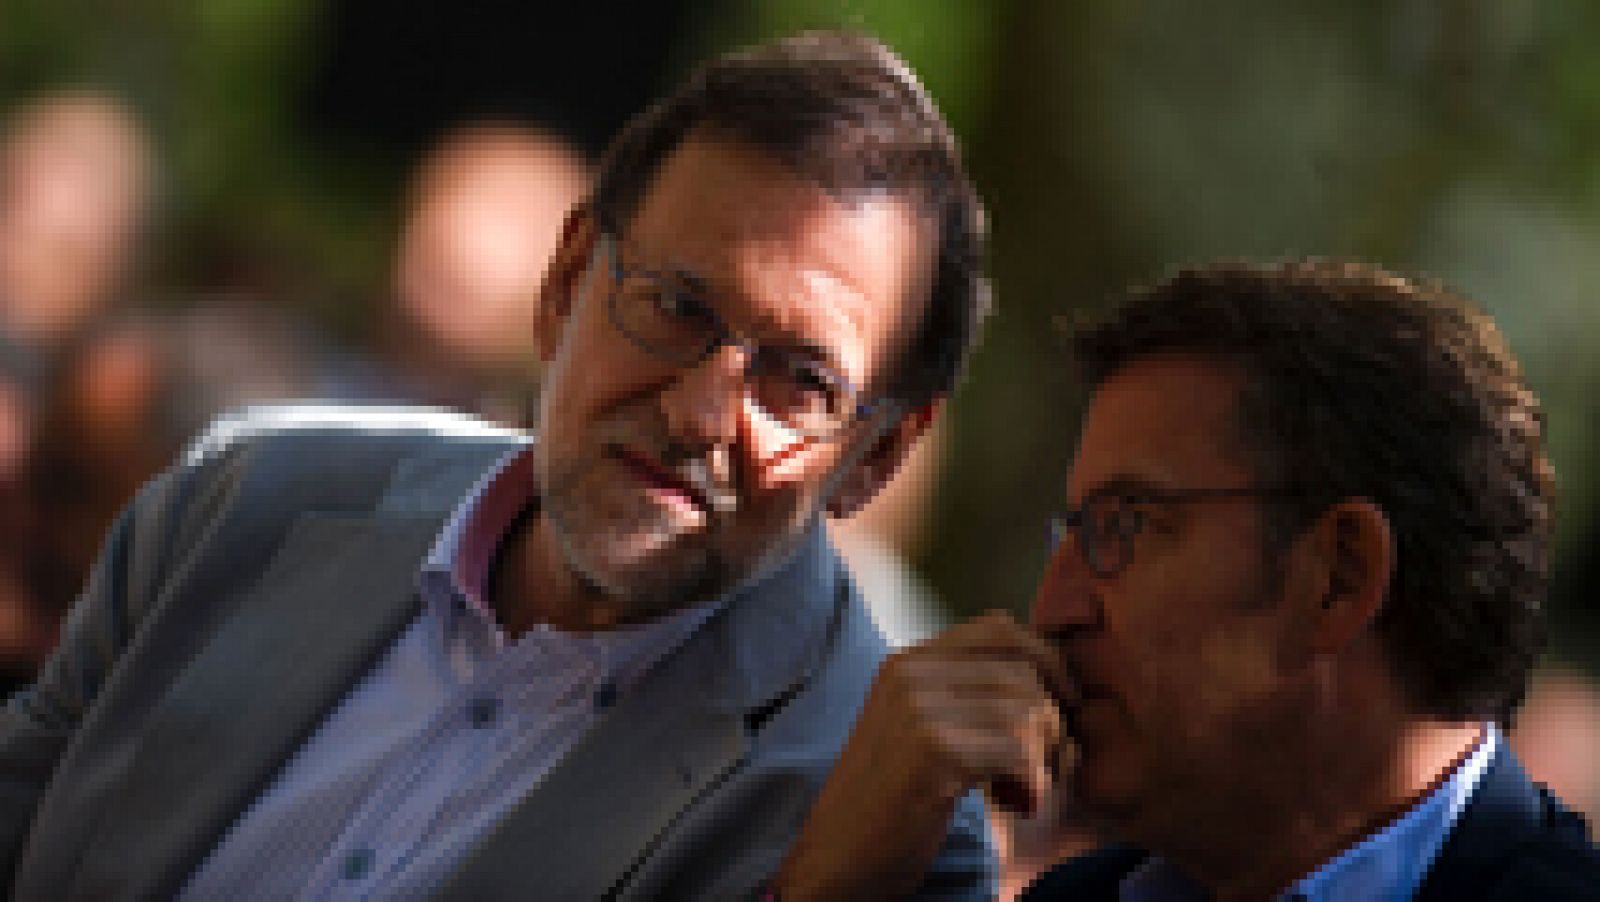 Rajoy: "La formación de gobierno hoy es más un deseo que un hecho"